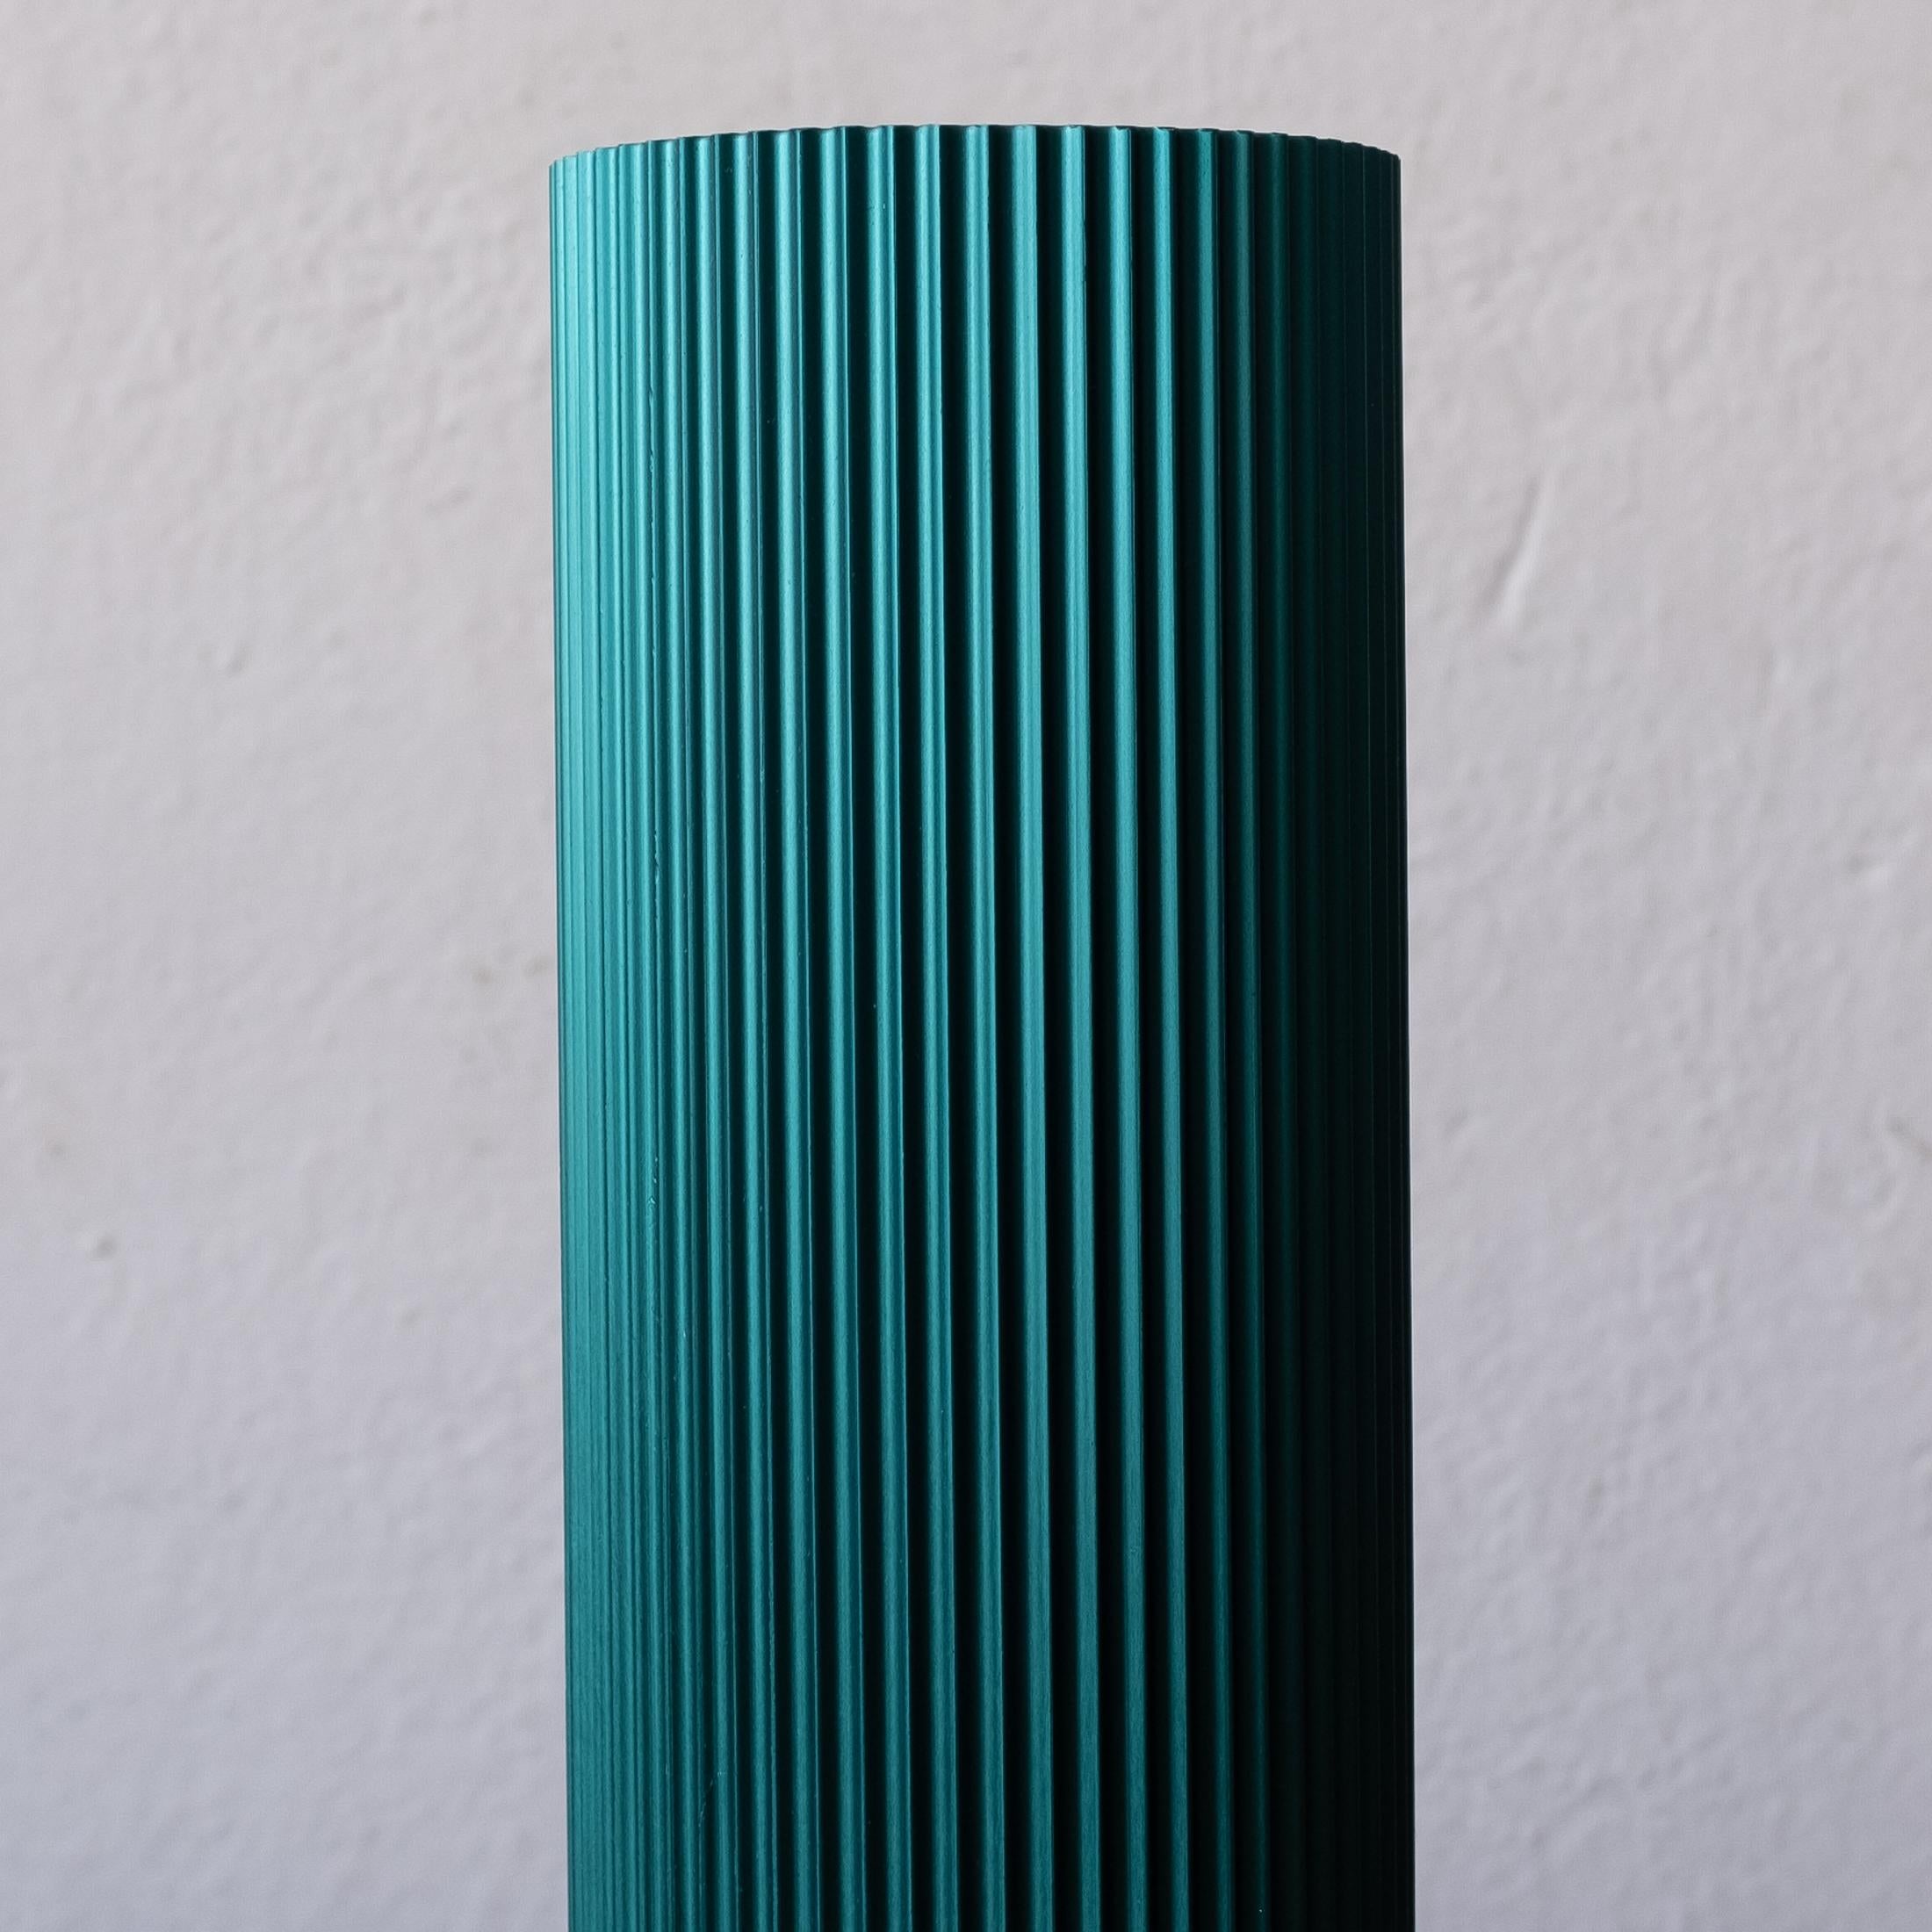 Mid-Century Modern Alcoa Extruded Anodized Aluminum Vase, 1959